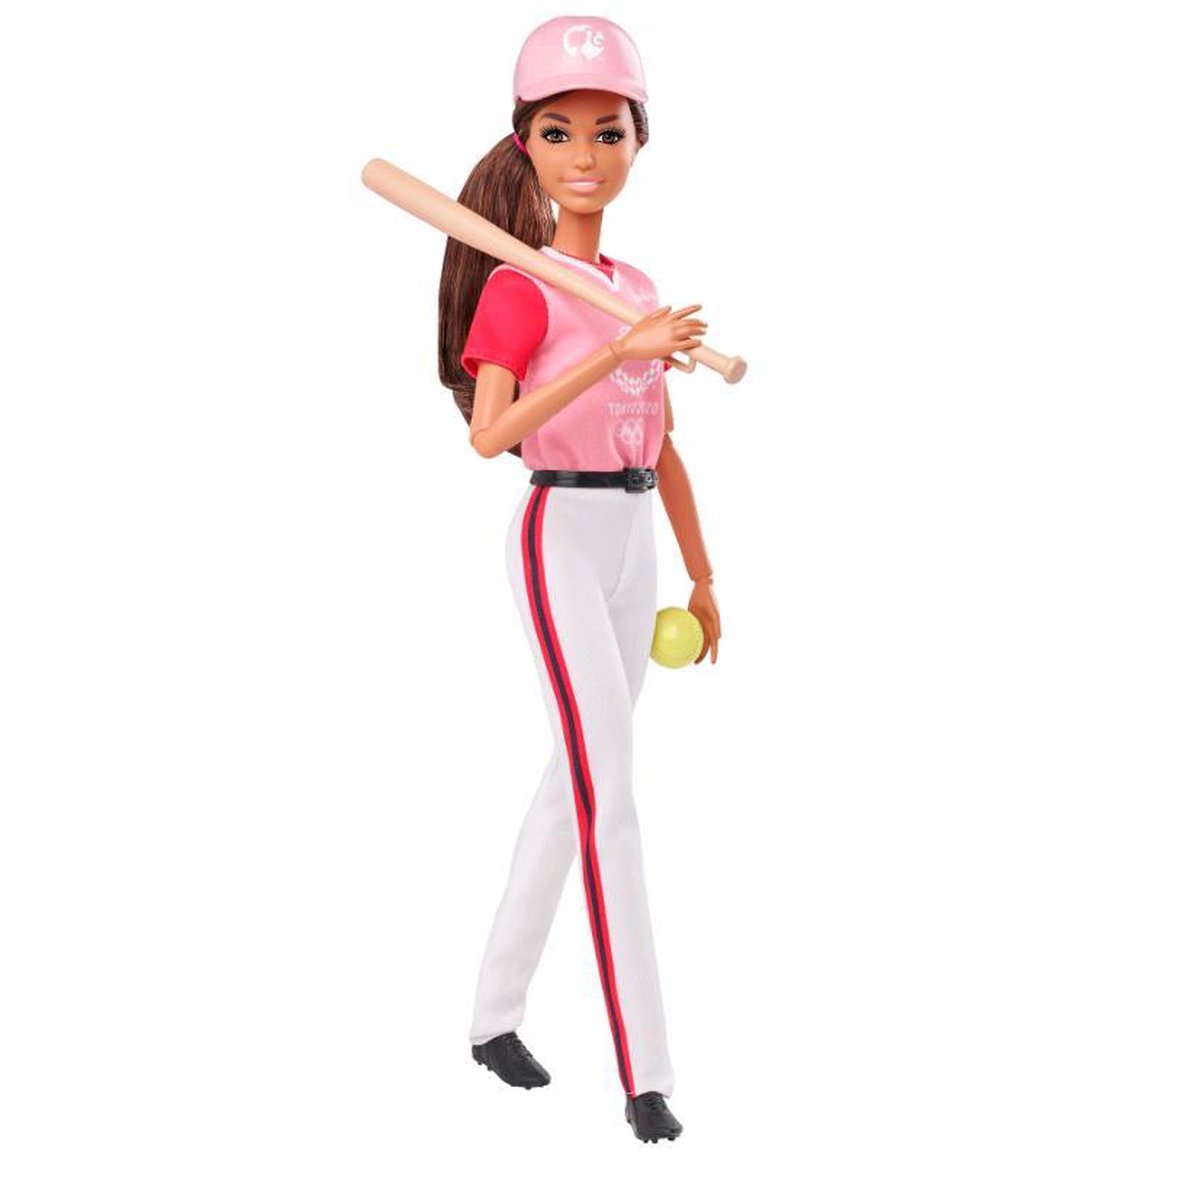 Barbie tienerpop Softball Tokyo 2020 meisjes 29 cm vinyl/EVA - Roze